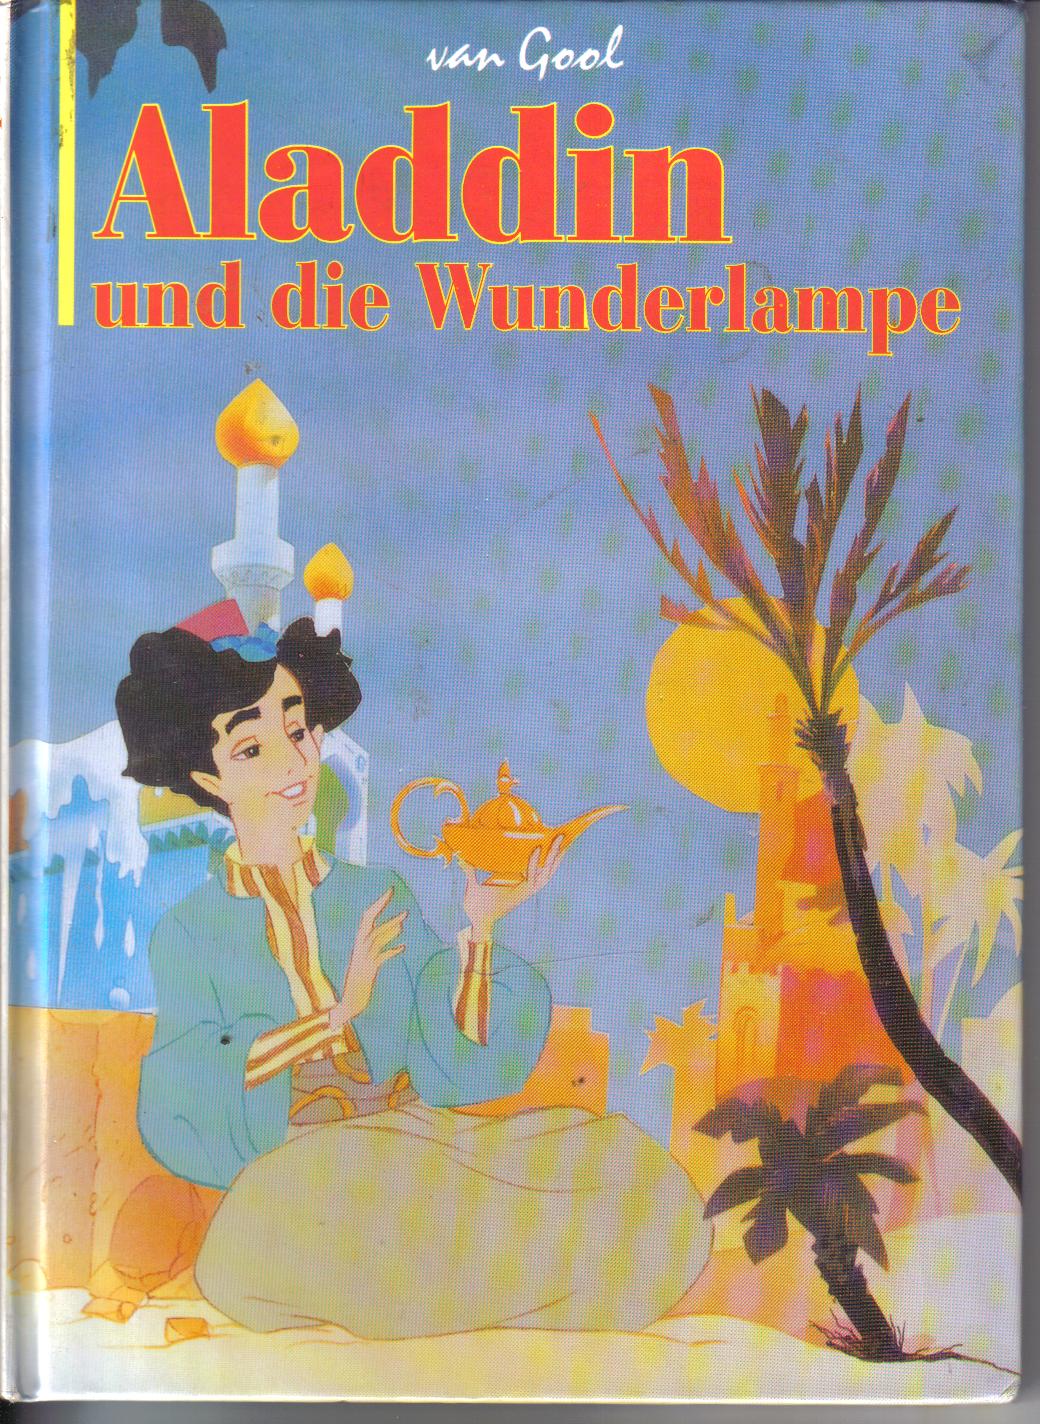 Aladdin und die Wunderlampevan Gool